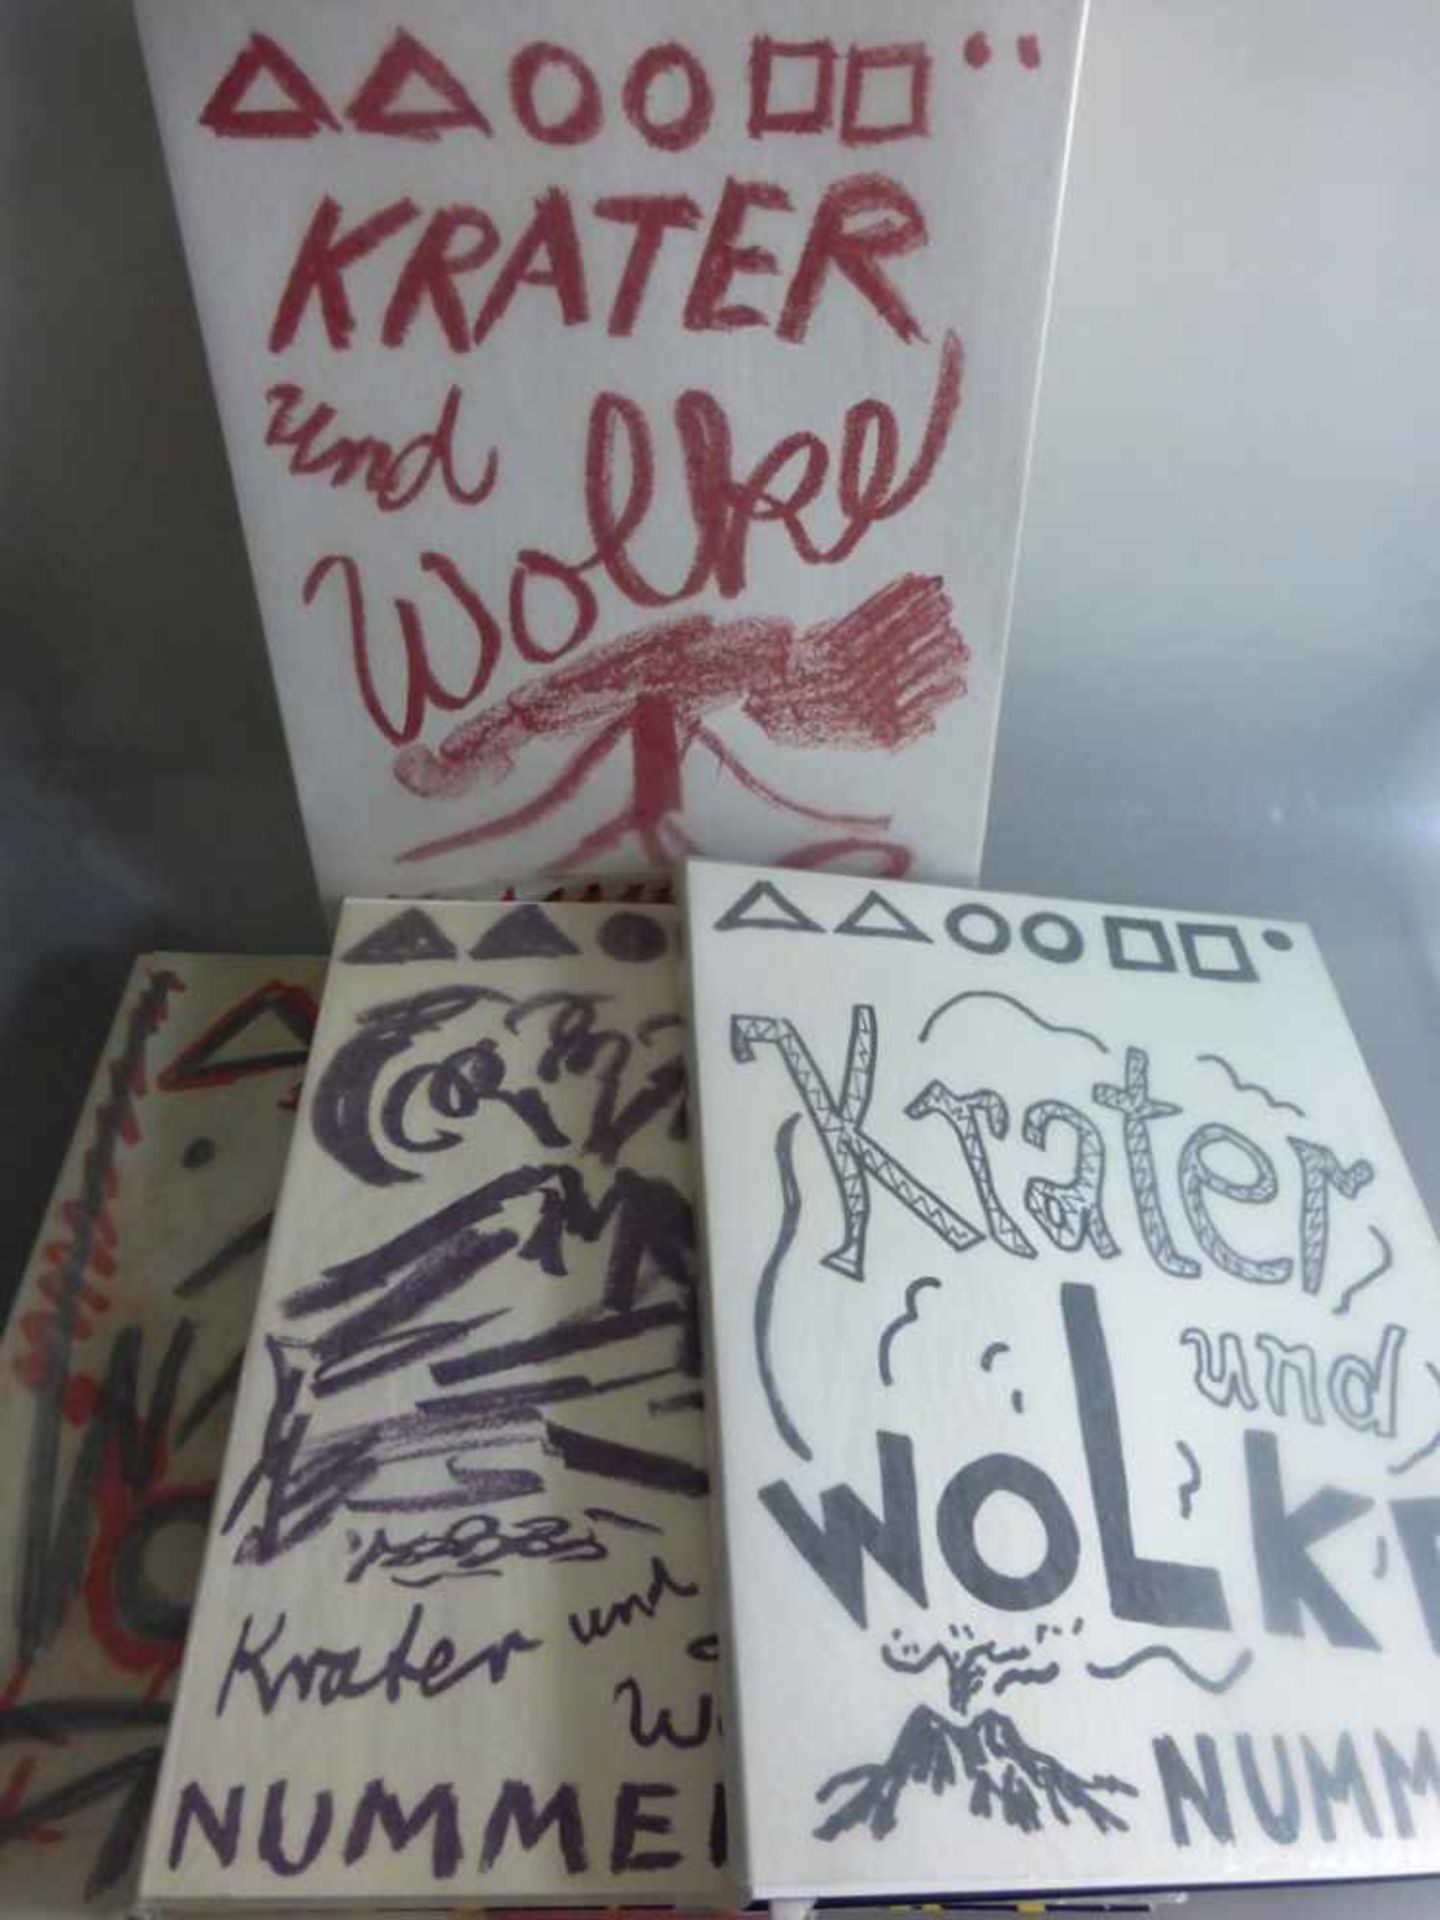 Winkler, Ralf (A.R. Penck - Herausgeber), Köln Galerie Michael Werner, 4 Bände, Krater undWolke,